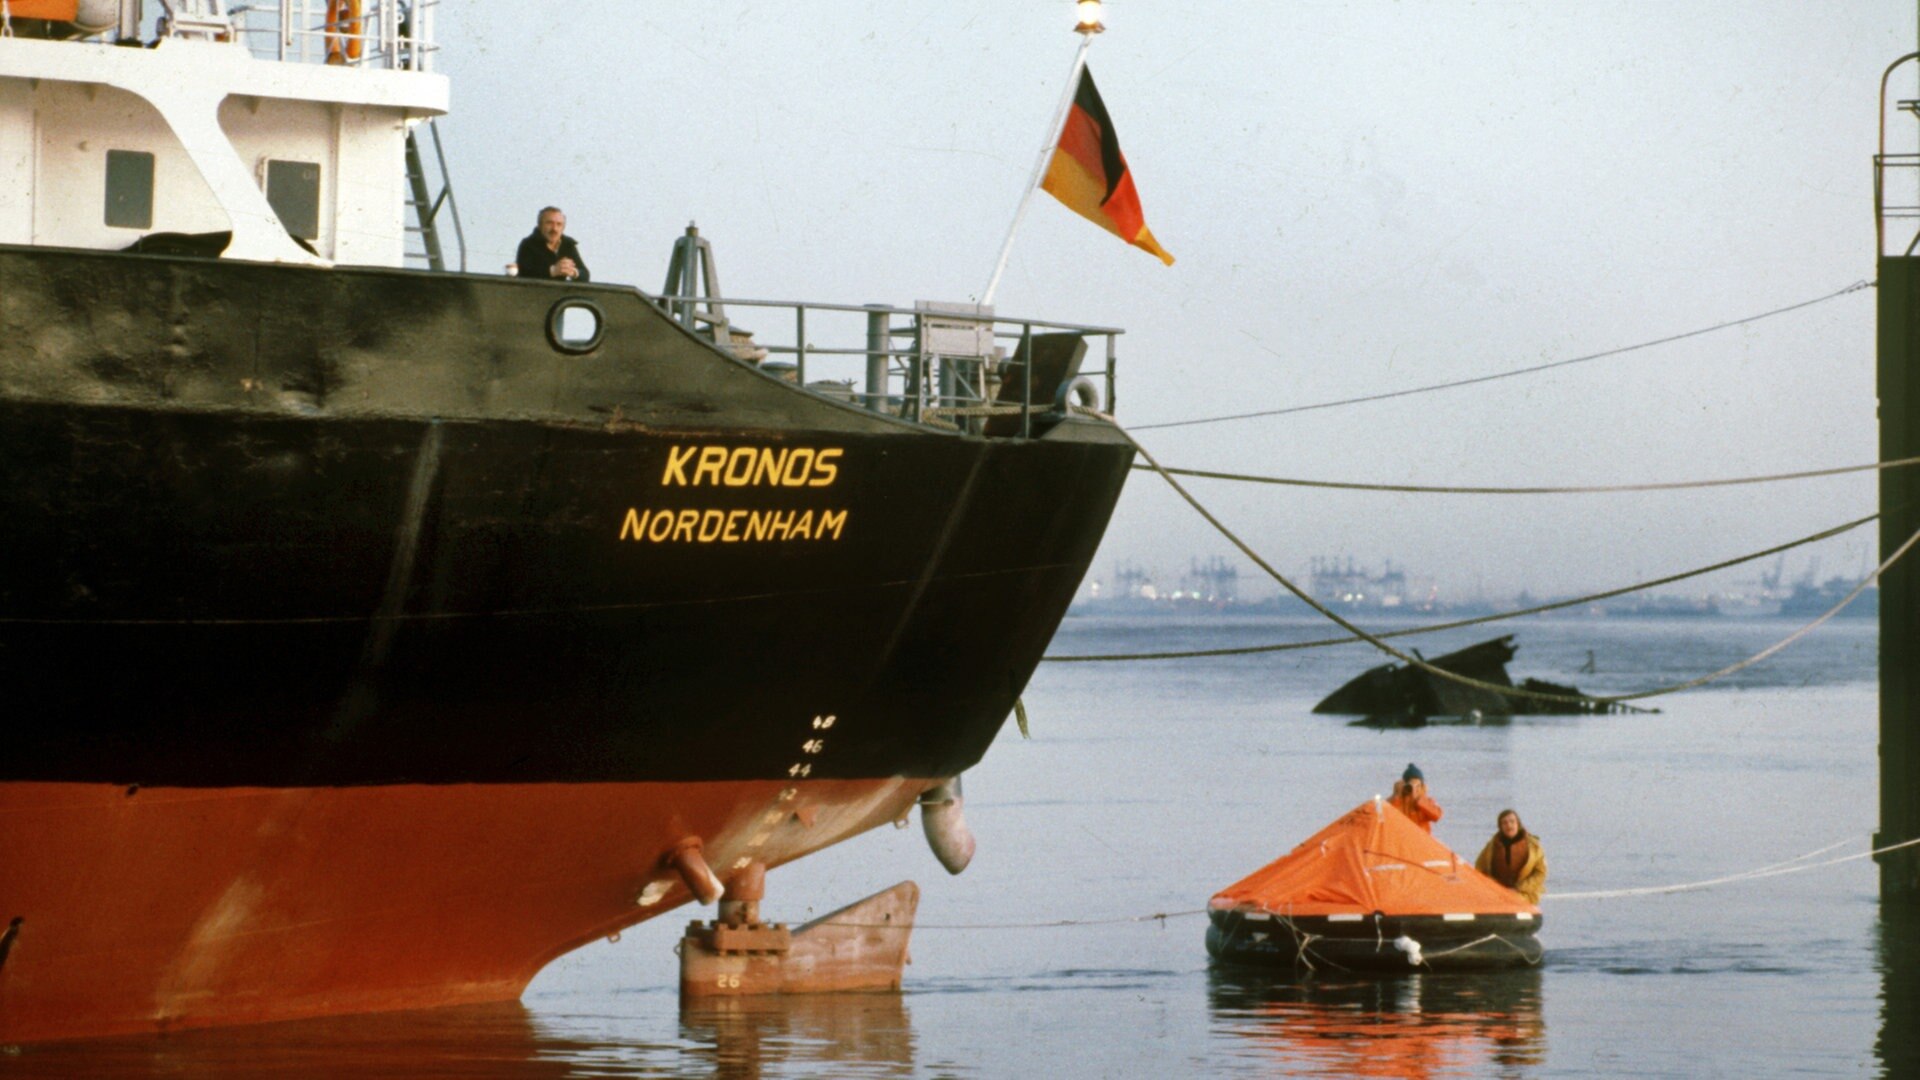 Greenpeace Erste Deutschland Aktion Vor 40 Jahren In Nordenham Ndr De Geschichte Chronologie